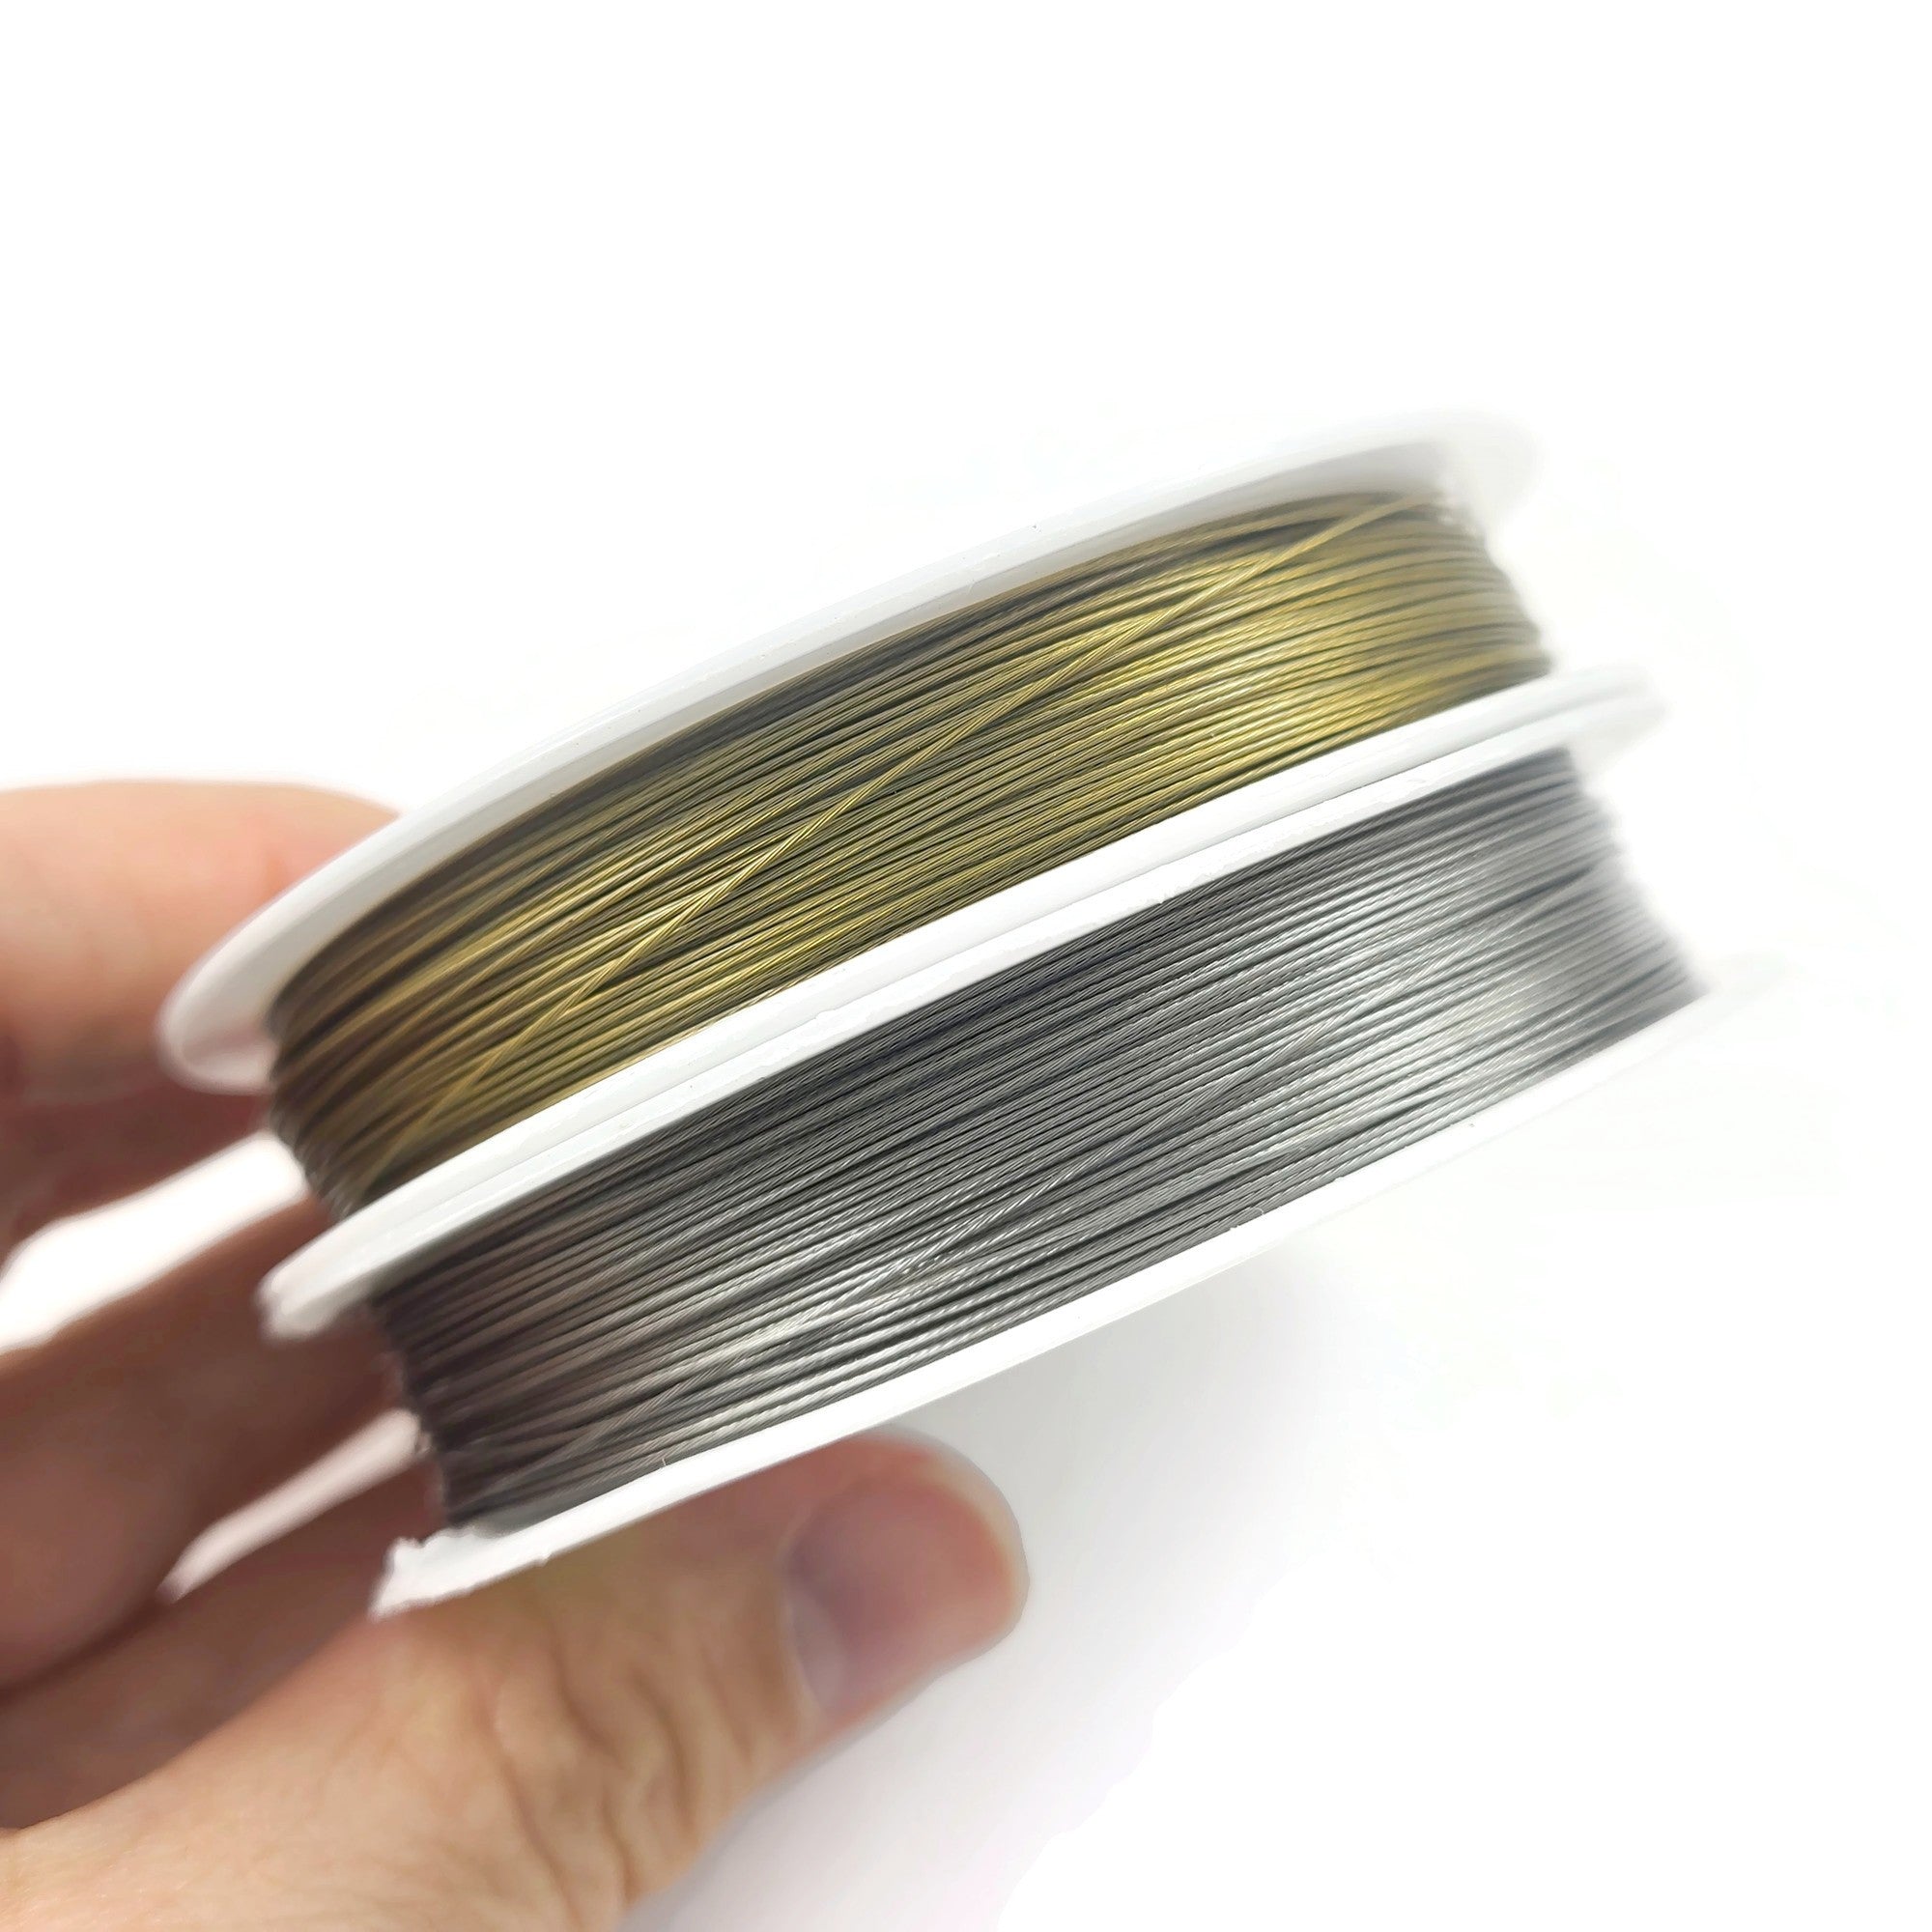 Câble en acier inoxydable - 50m de fil en métal